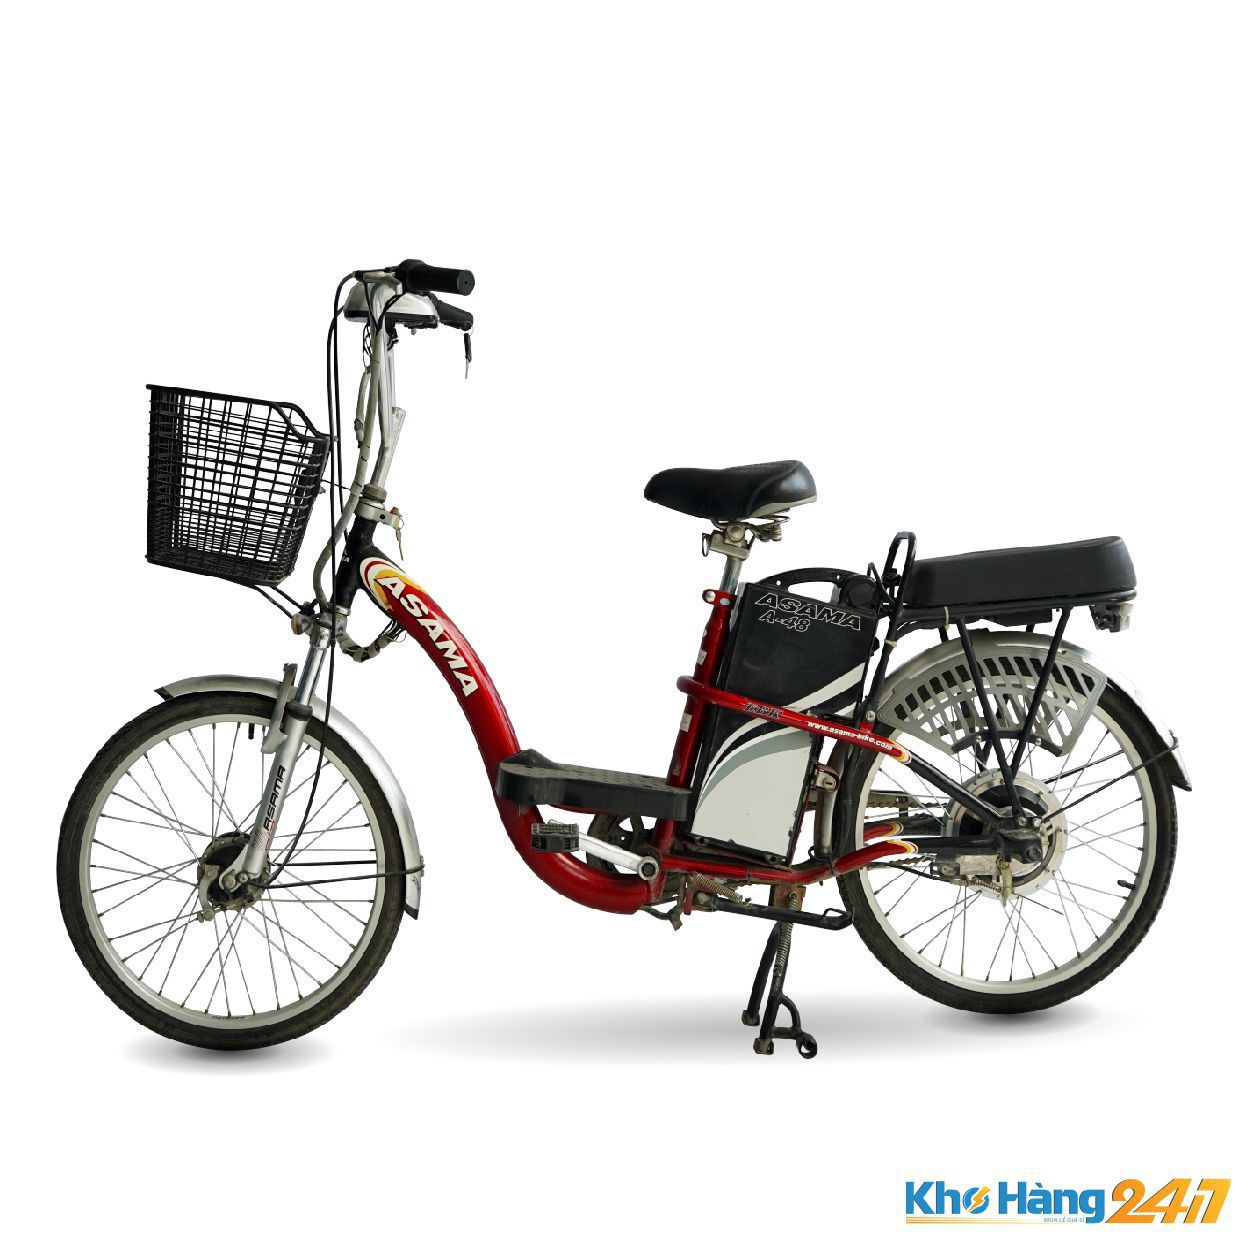 Mua xe đạp điện cũ giá rẻ TpHCM chính hãng uy tín chất lượng